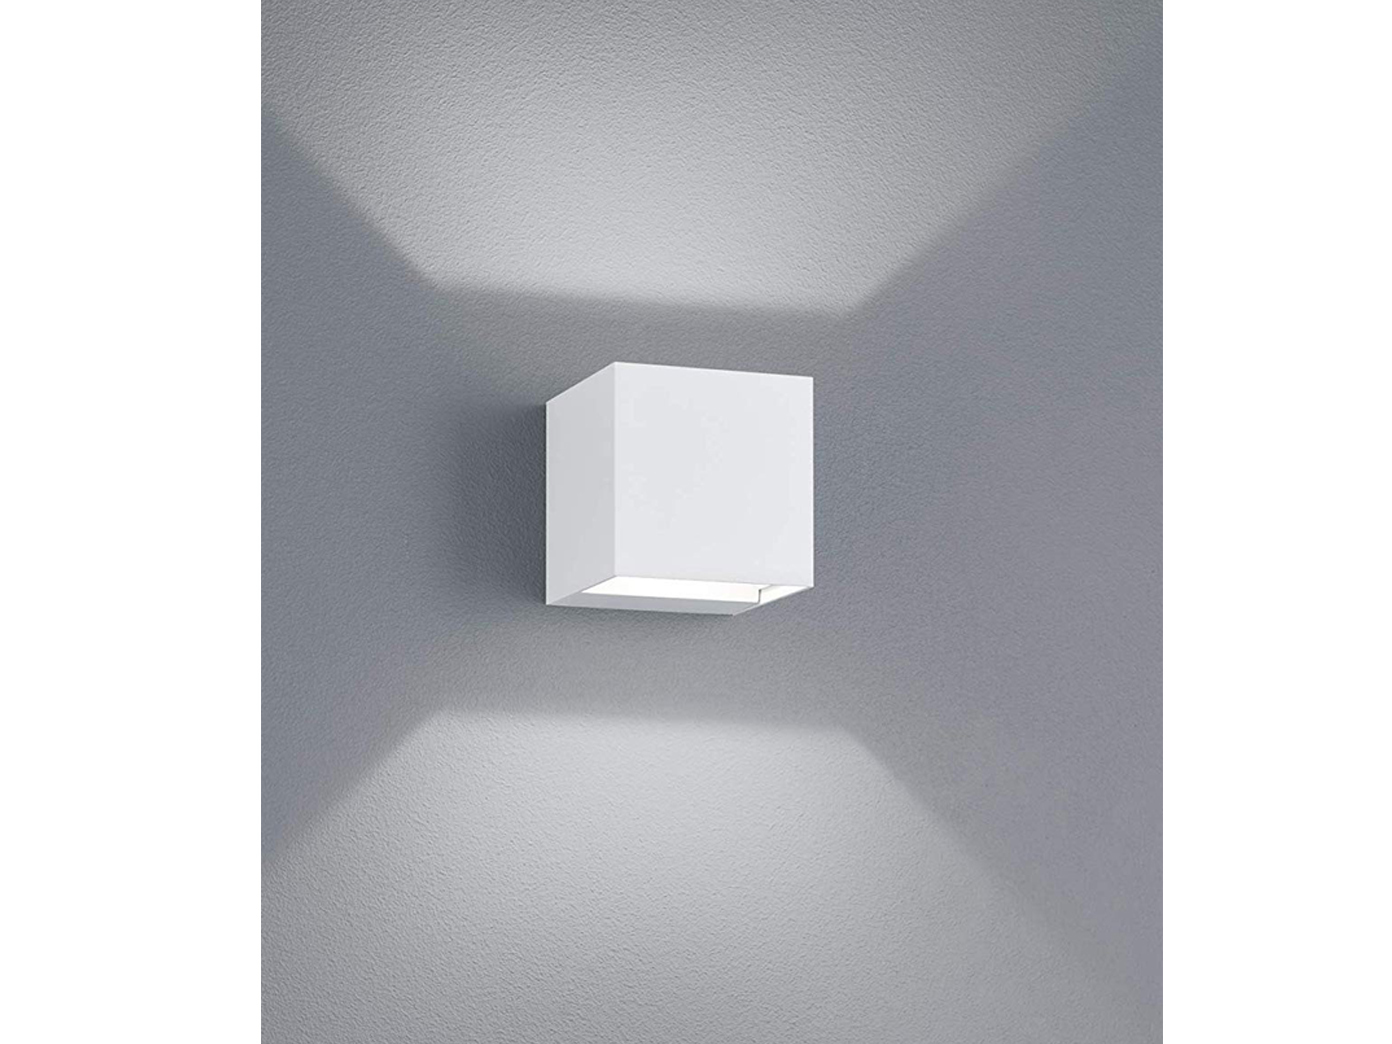 Trio LED Wandleuchte Wandlampe Außenleuchte weiß matt Druckguss Alu 8x8cm  2x3w online kaufen | eBay